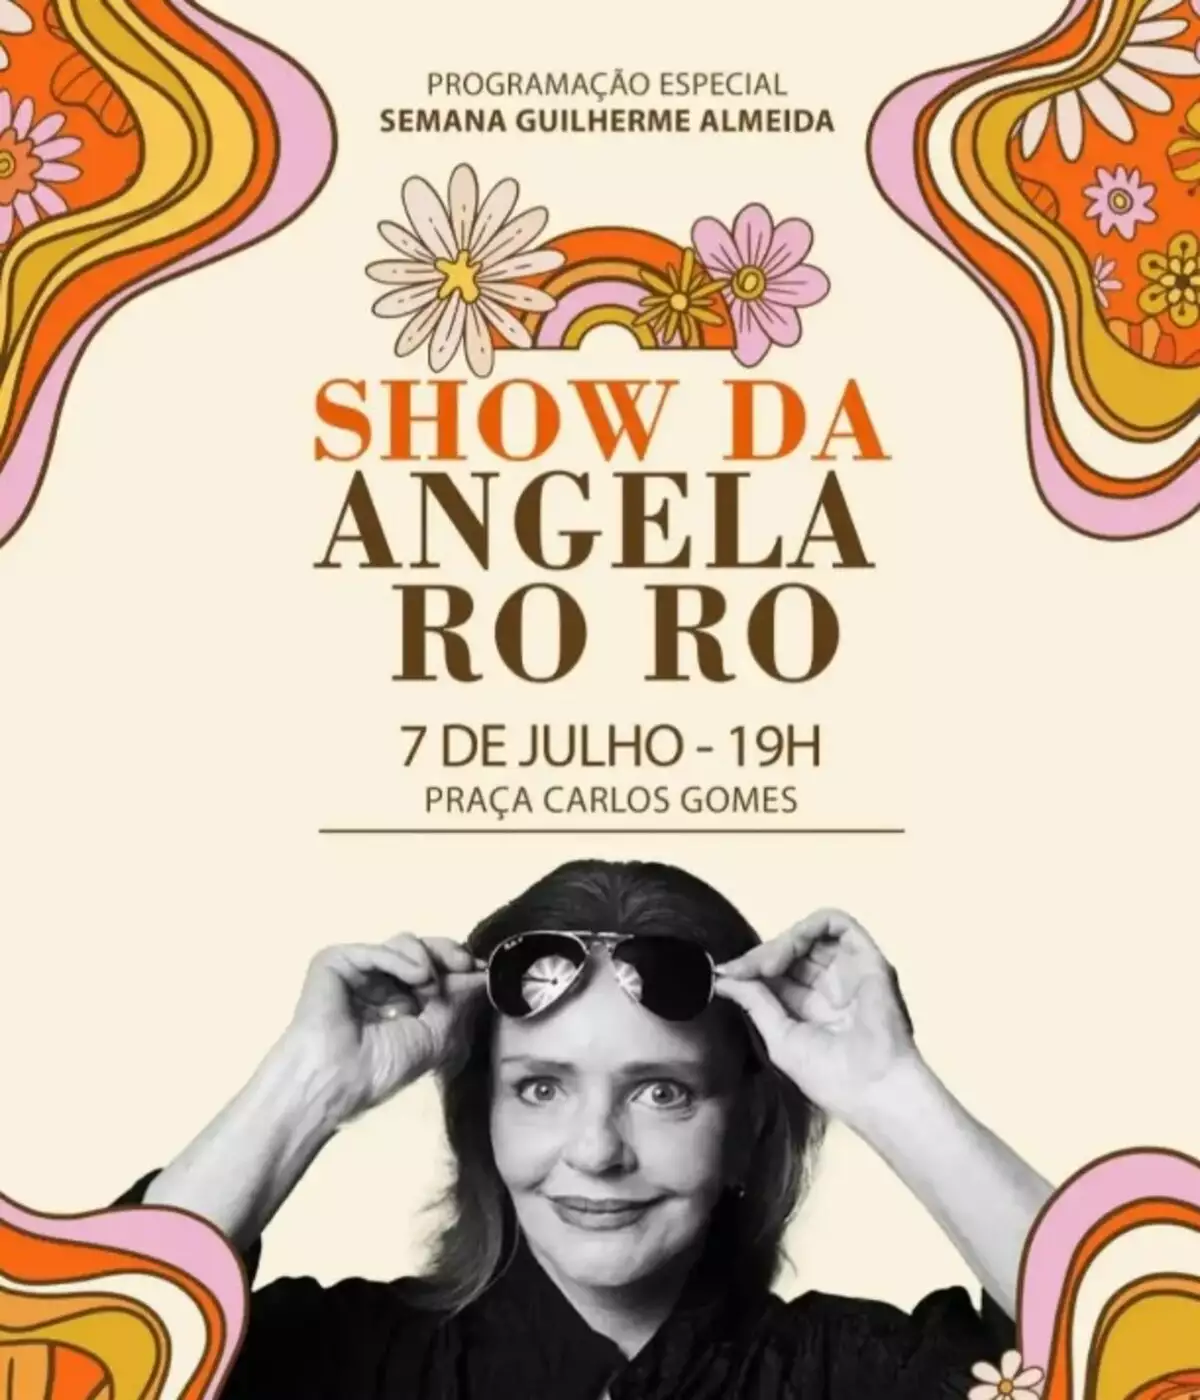 Angela Ro Ro faz show nesta sexta-feira, na Praça Carlos Gomes